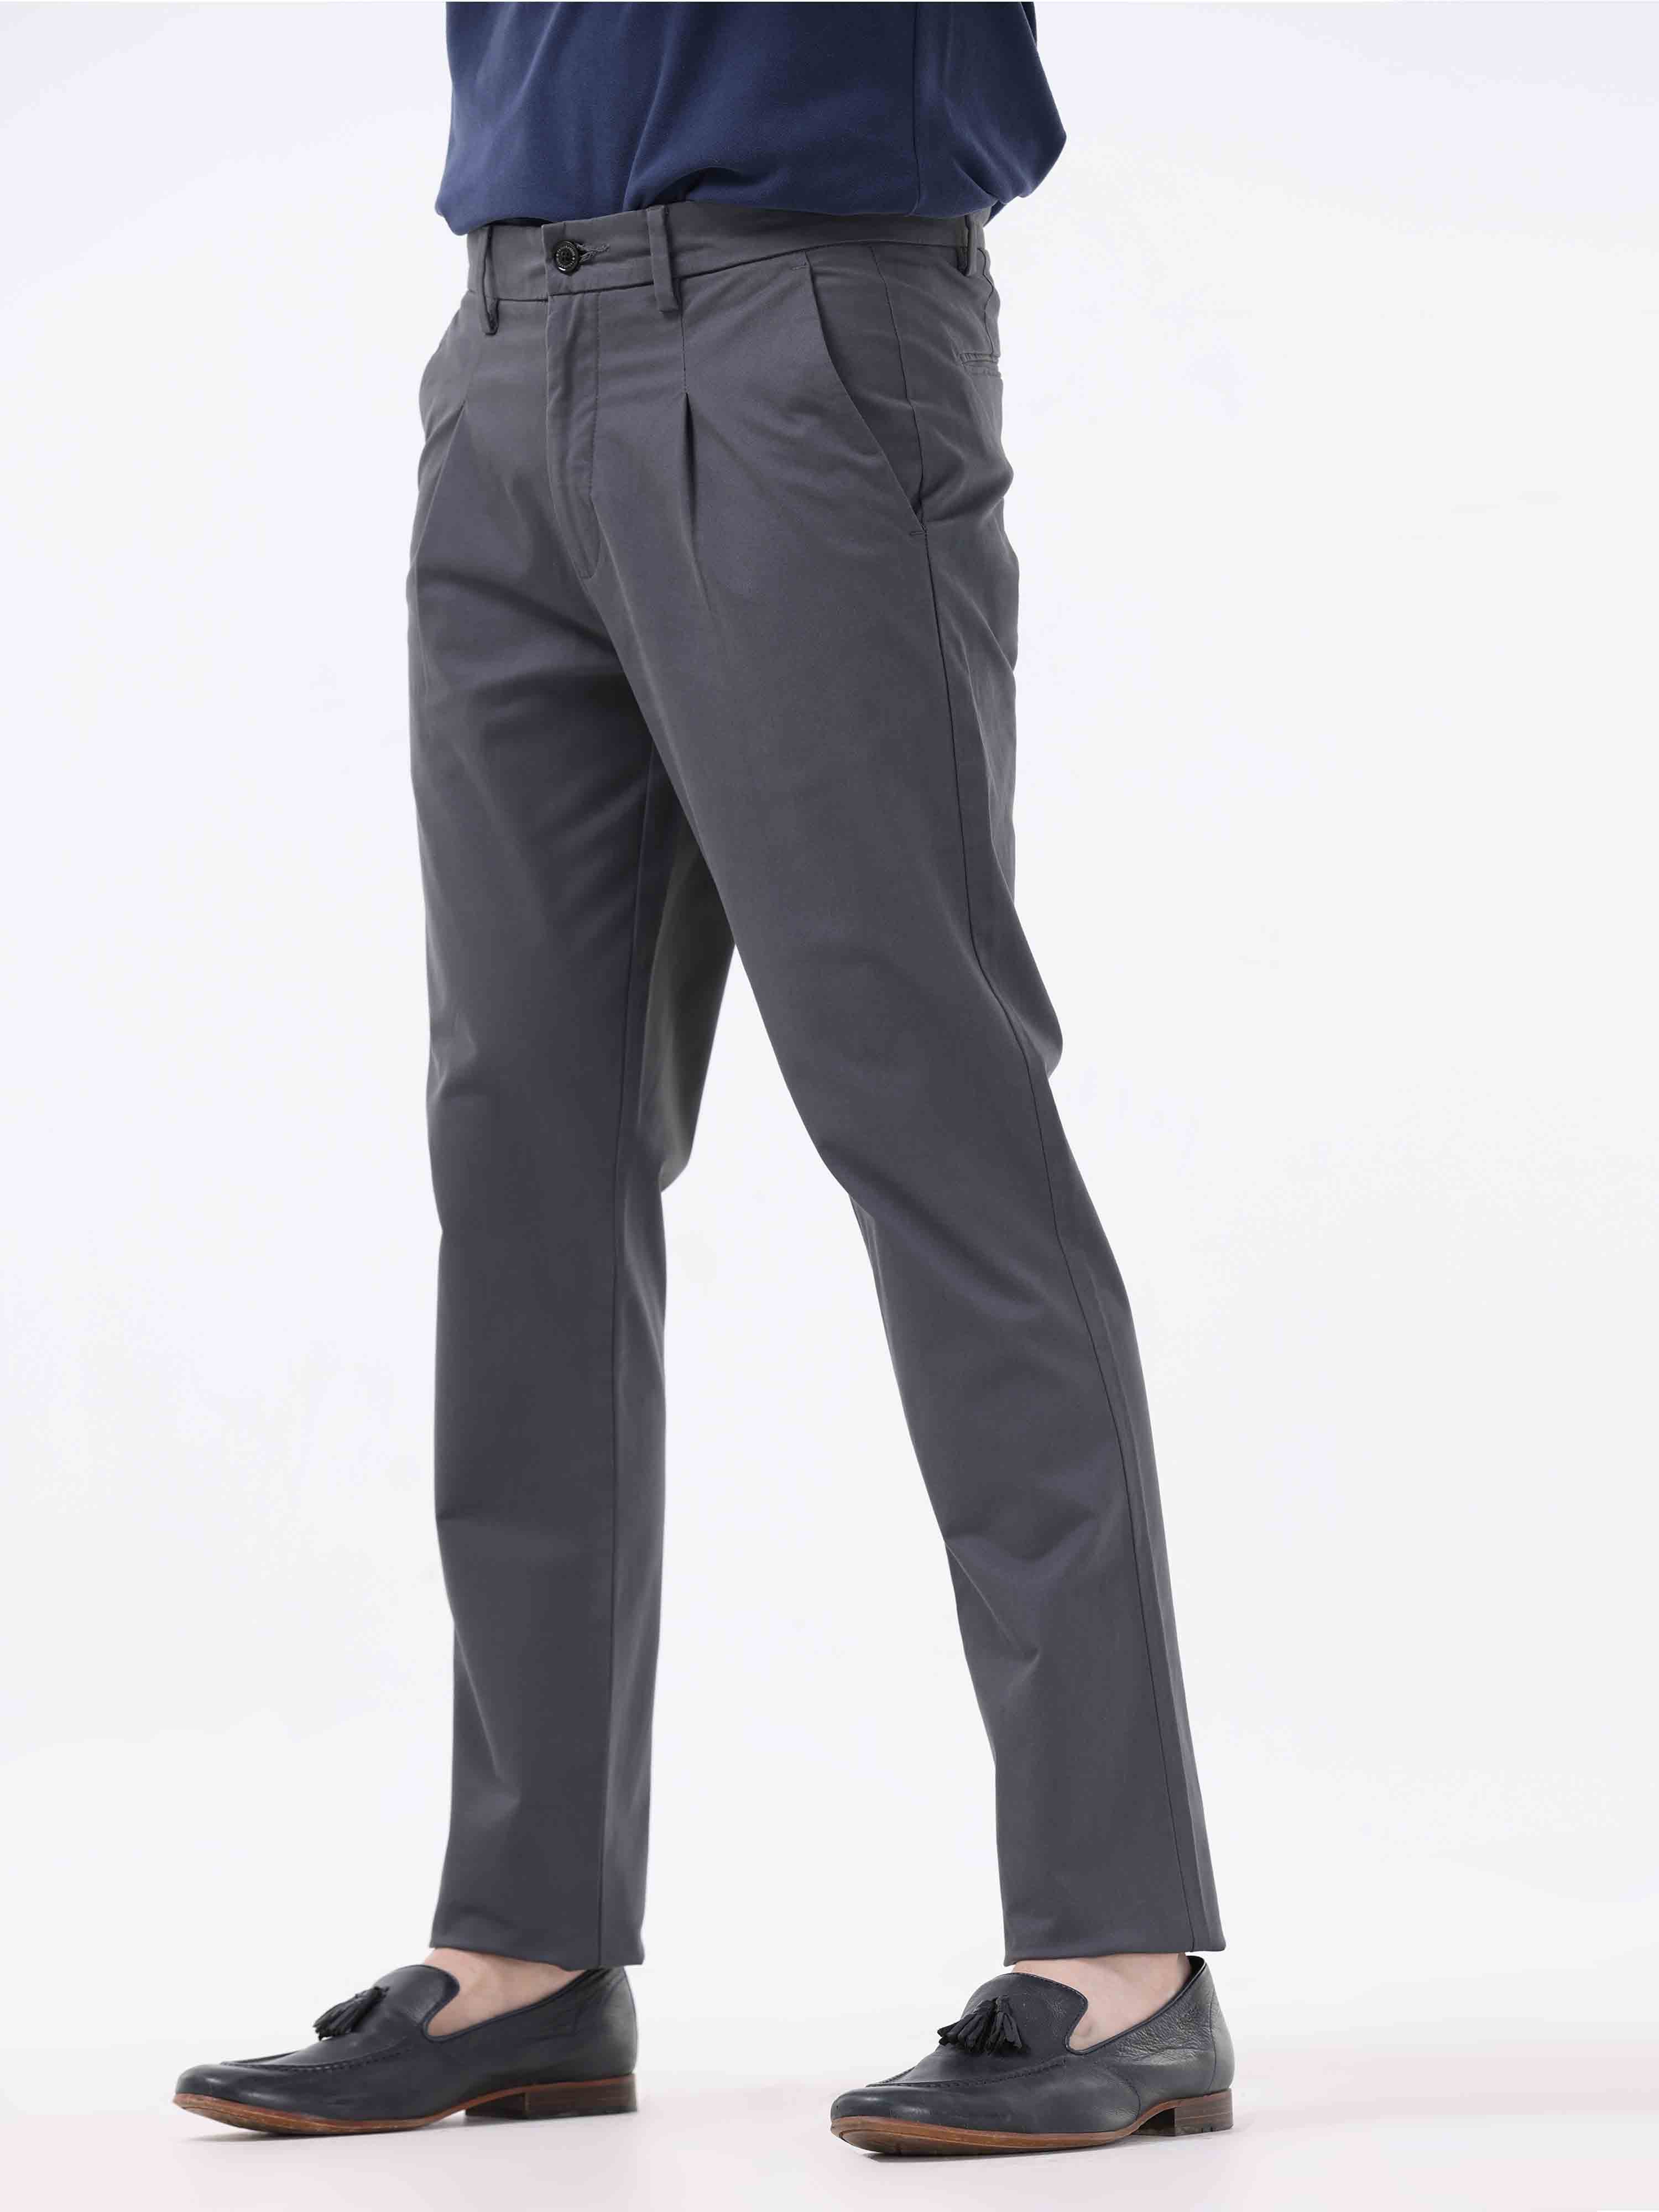 Paramount Dress Pants - Dark Grey – Bombay Shirt Company